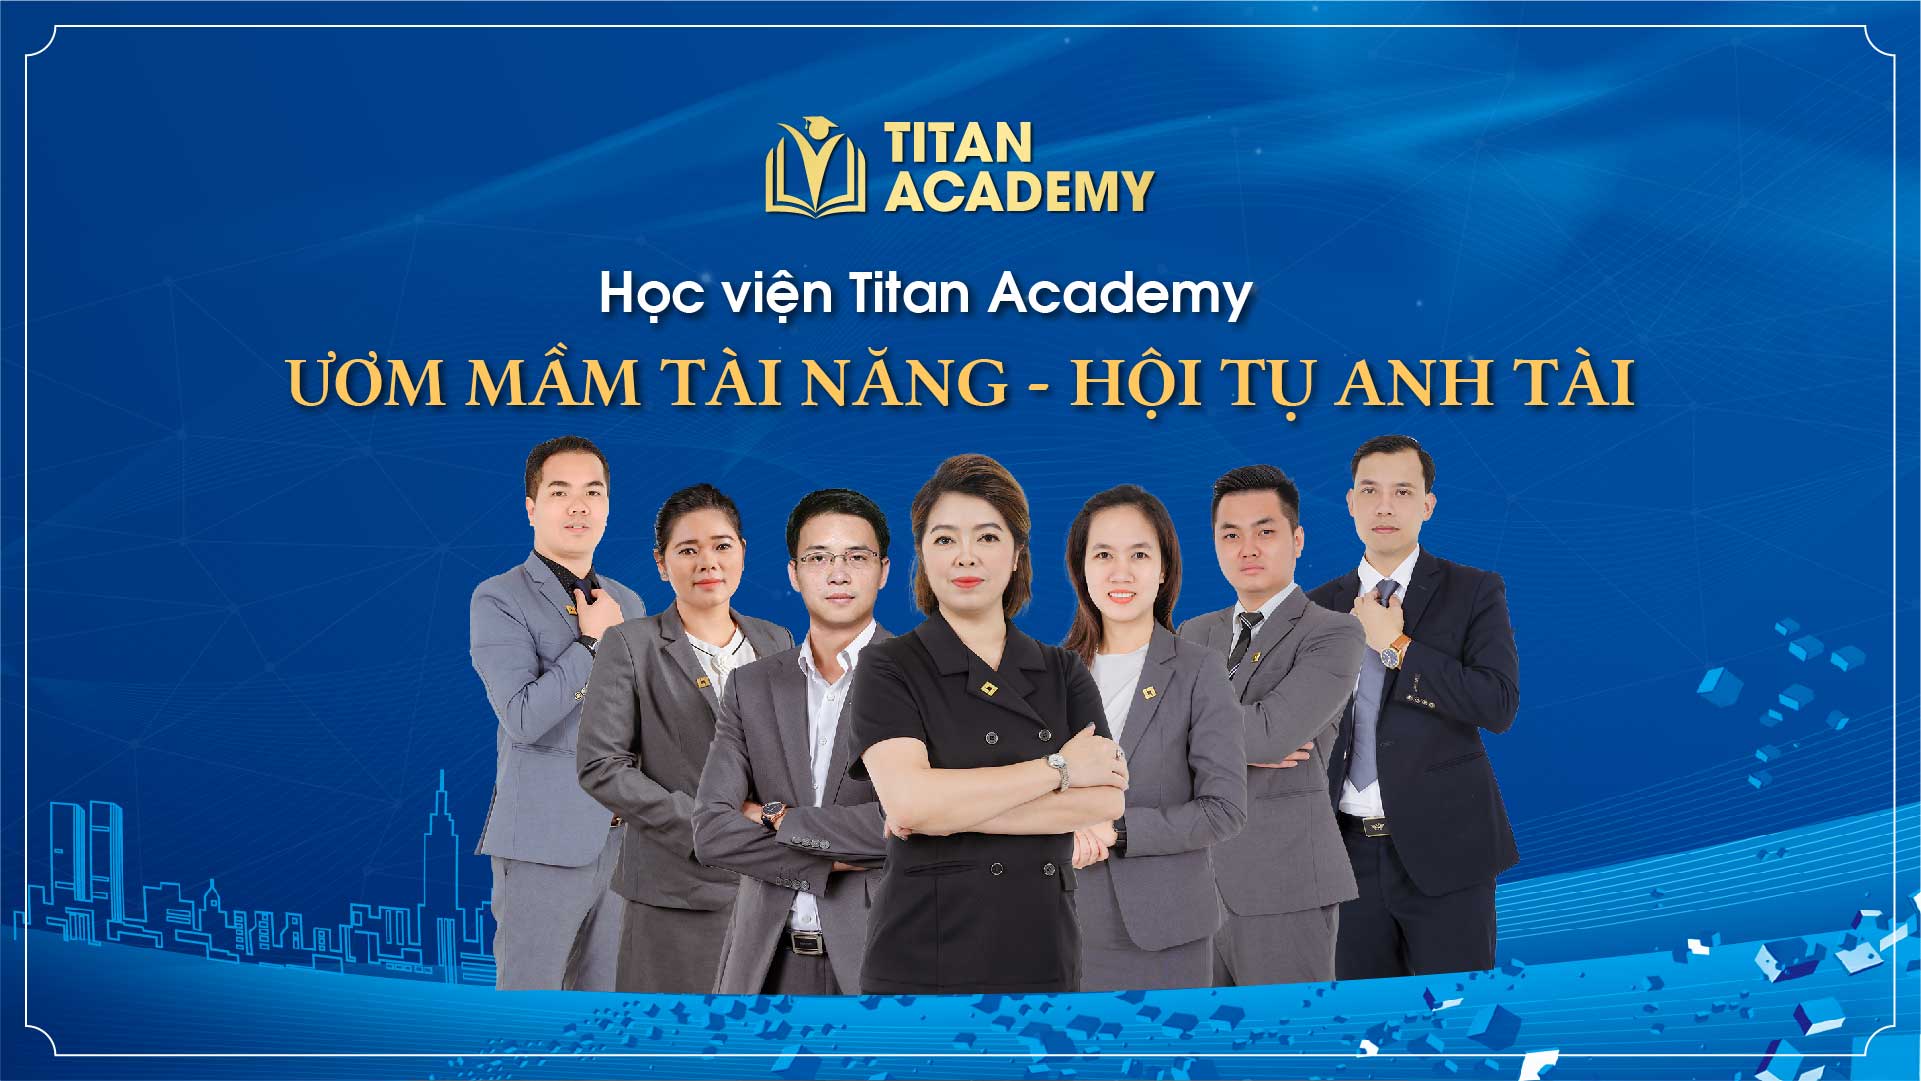 Đội ngũ chuyên gia đào tạo tại Titan Academy